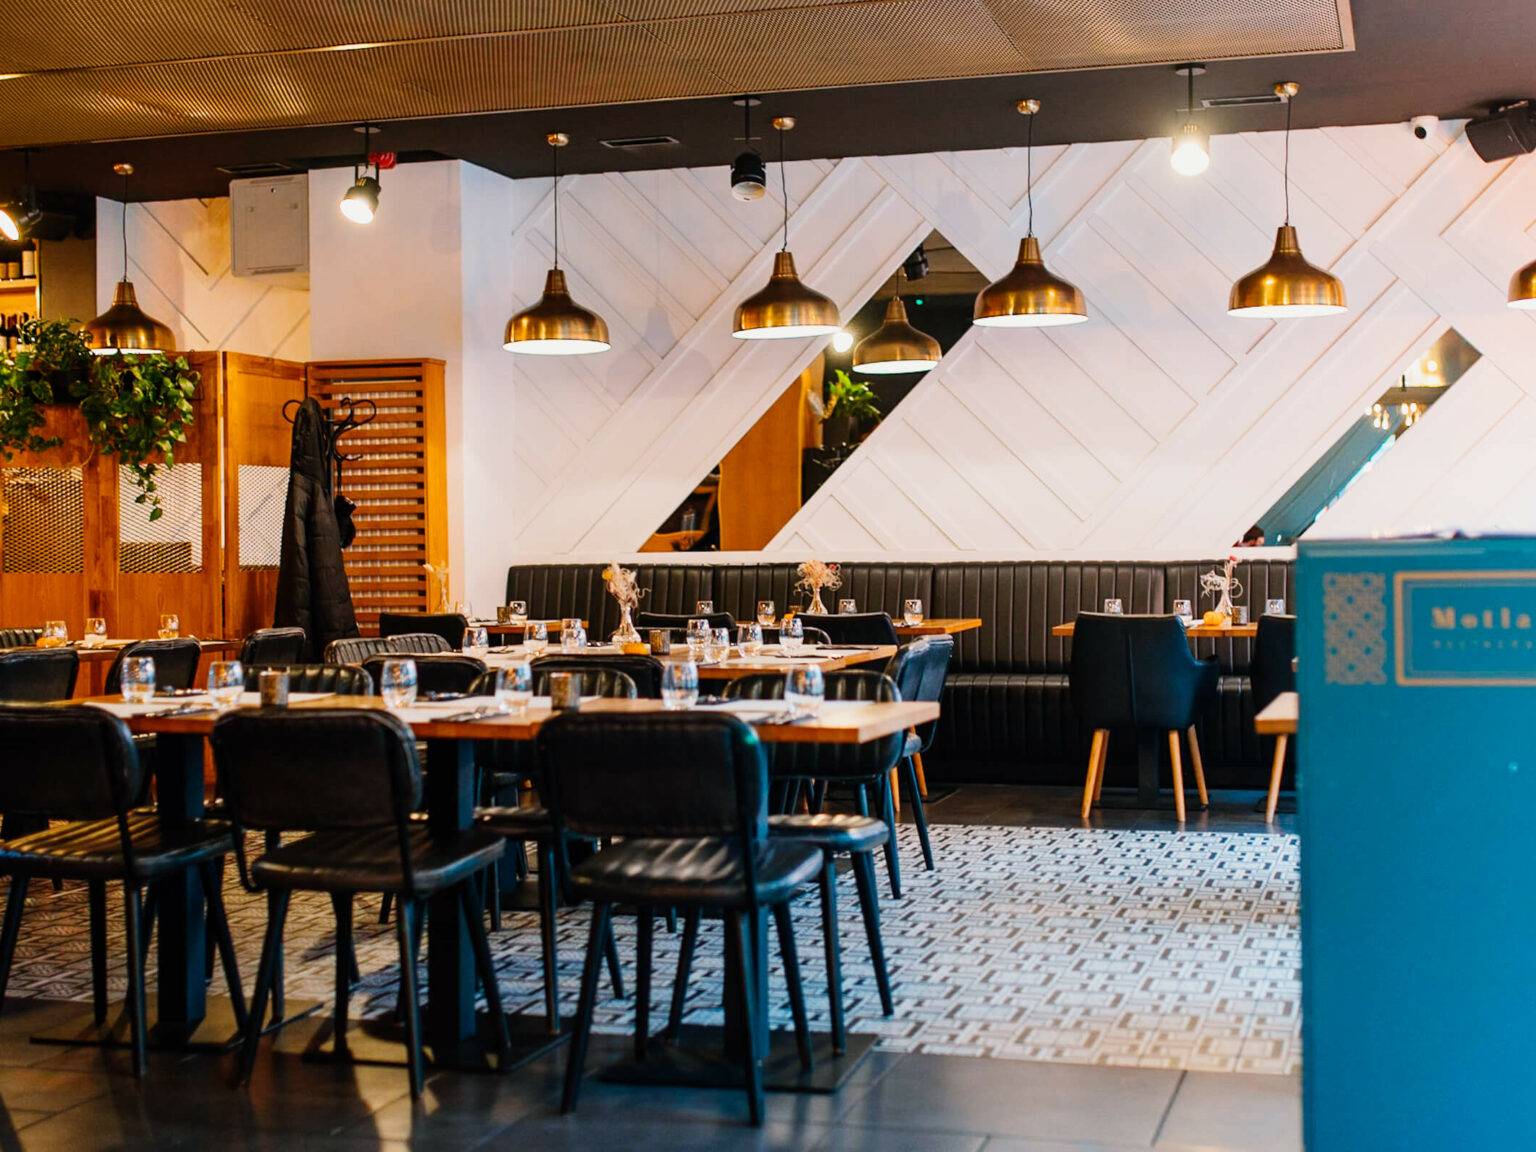 Das modern eingerichtete Restaurant Motlava in Danzig schmücken schwarze Stühlen, Holztischen und goldene Hängelampen.